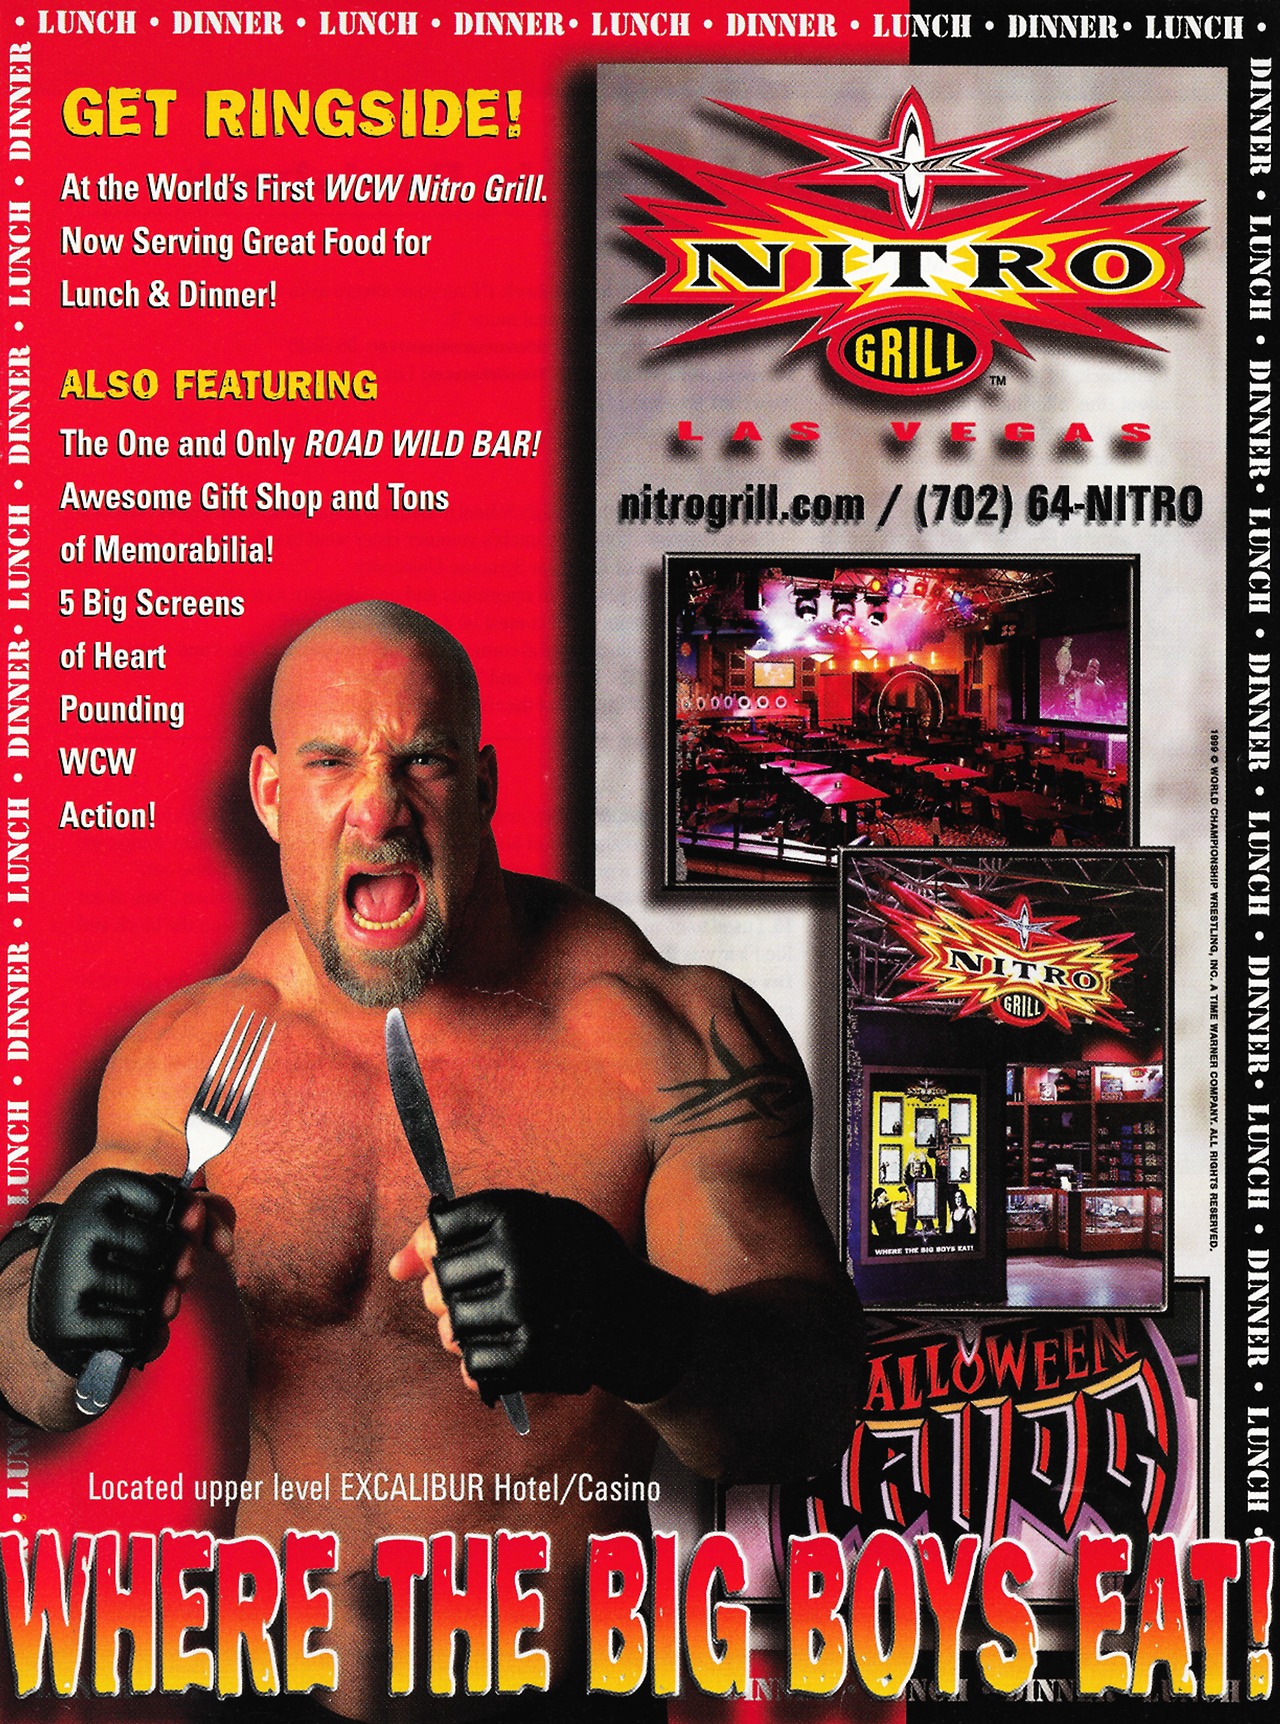 WCW-Nitro-Grill-ad.jpg